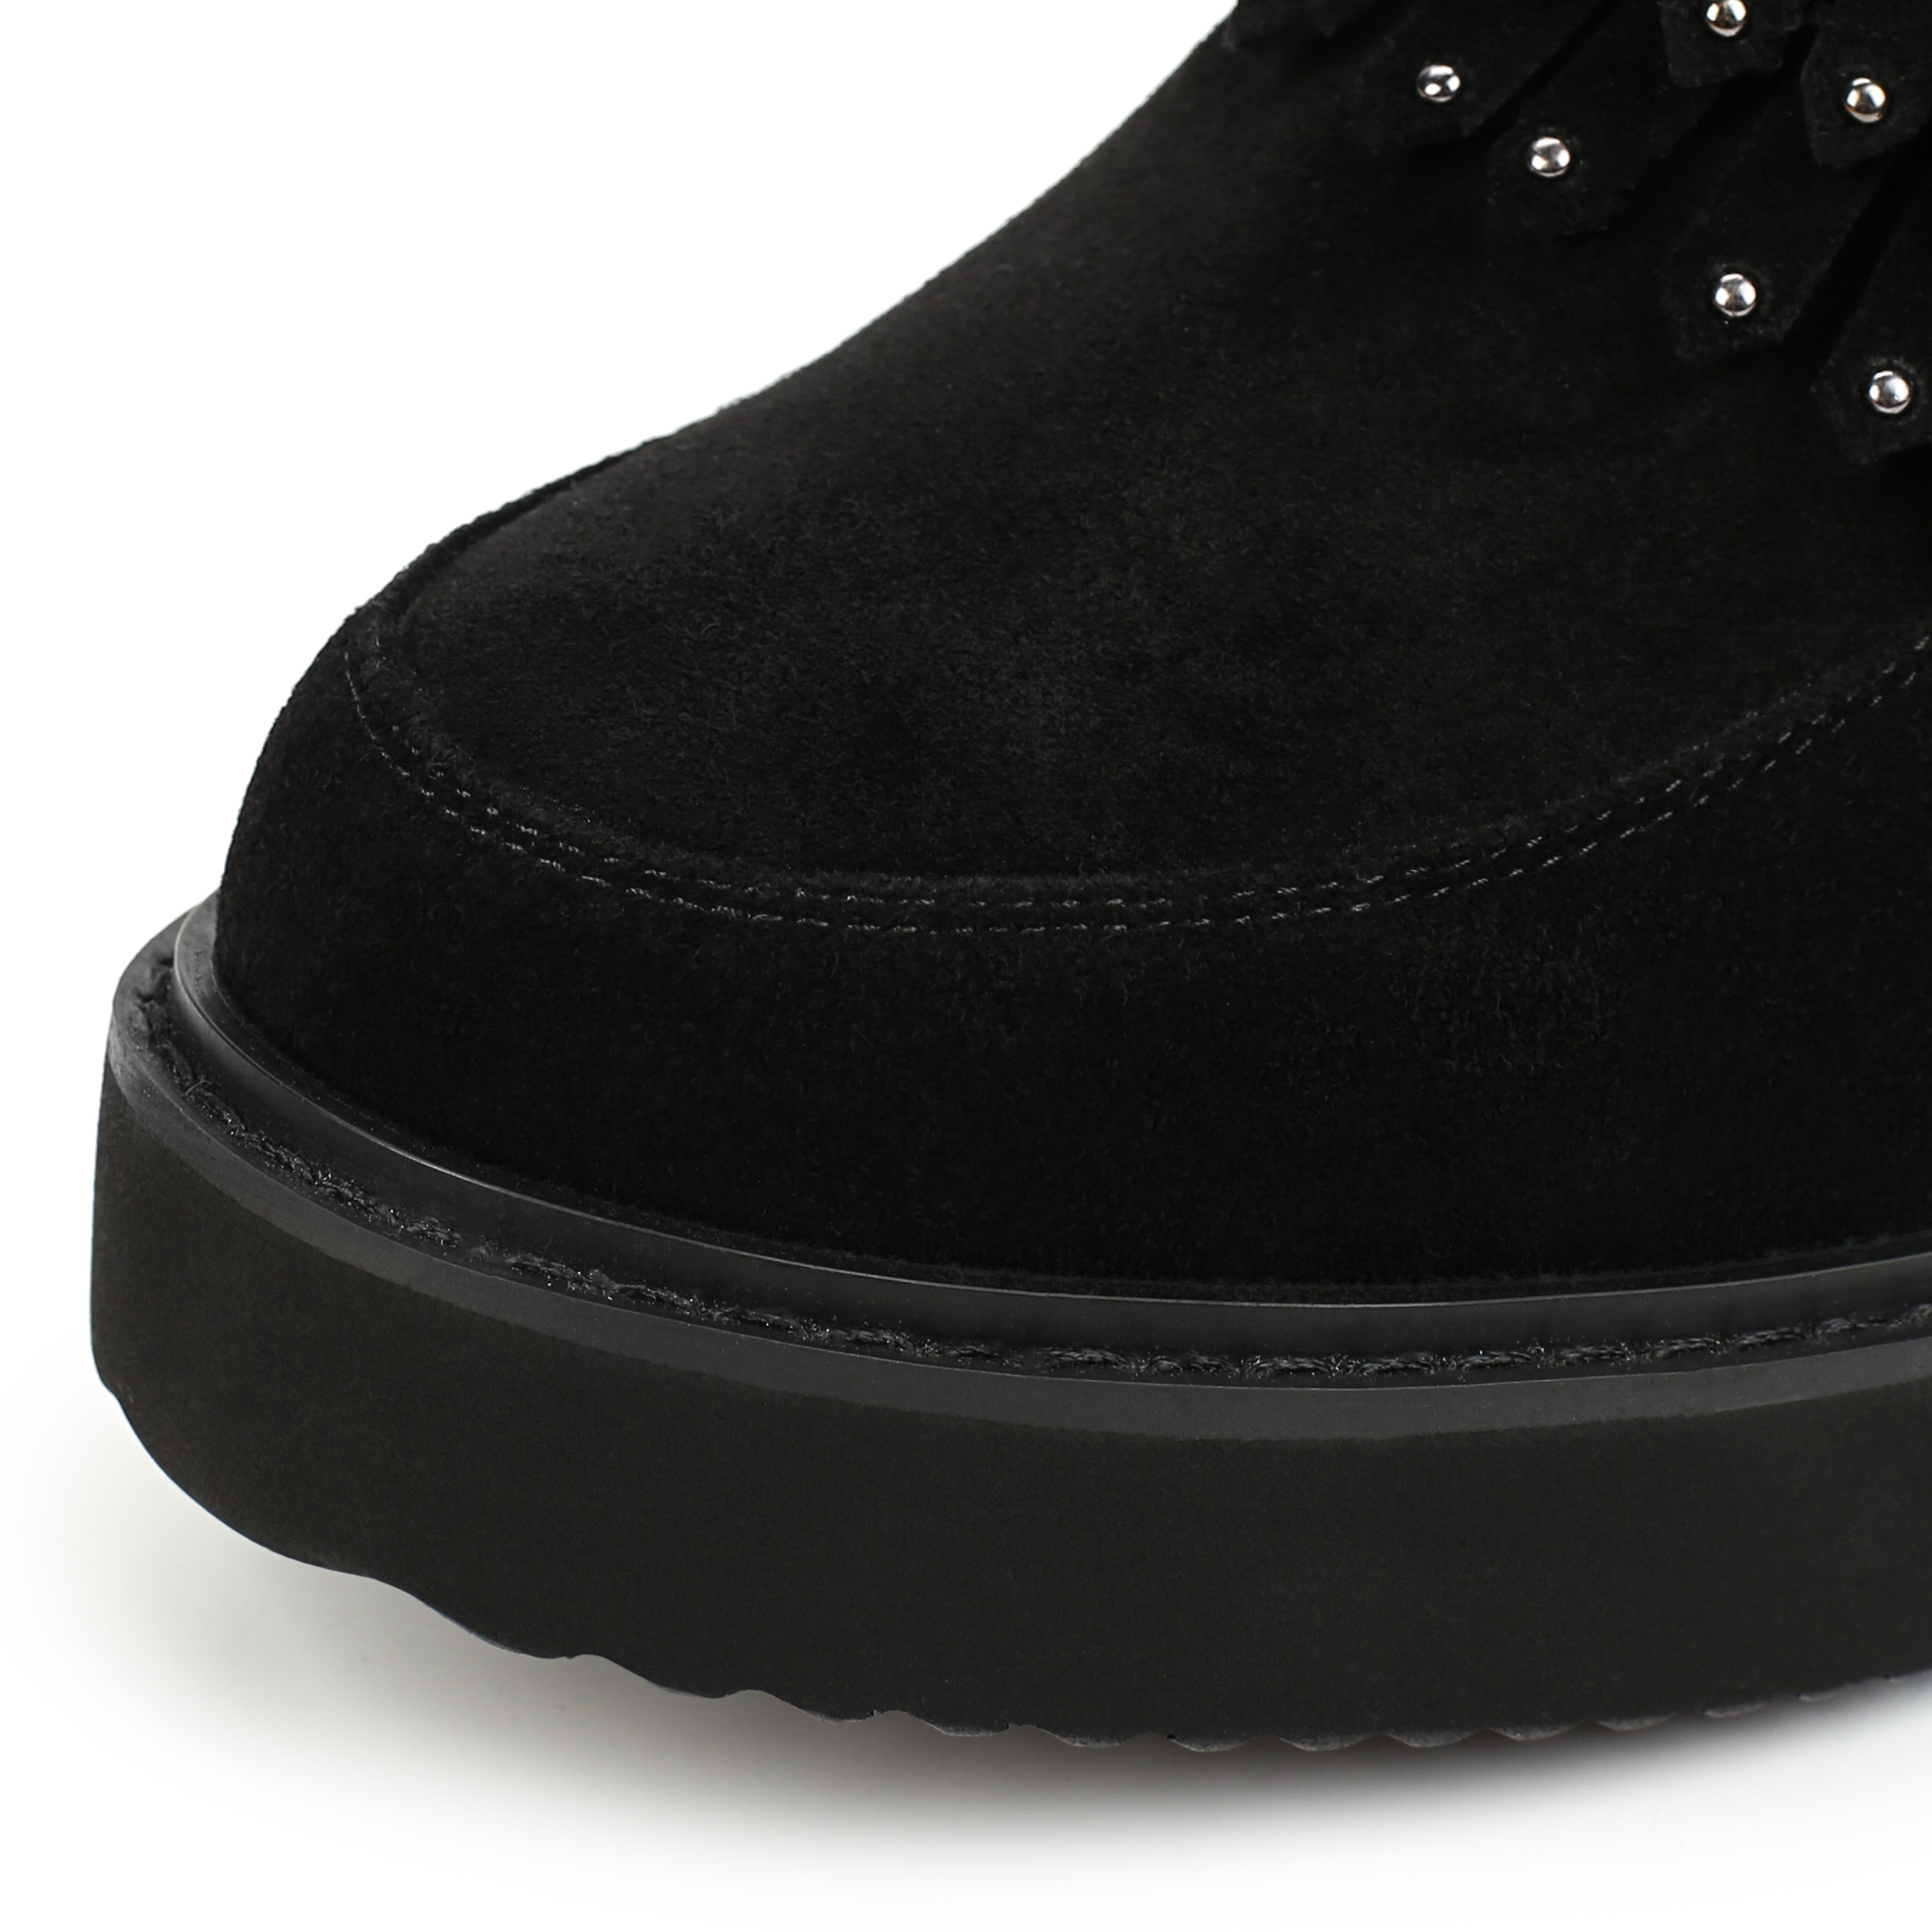 Ботинки Thomas Munz 080-149A-20602 080-149A-20602, цвет черный, размер 38 - фото 6